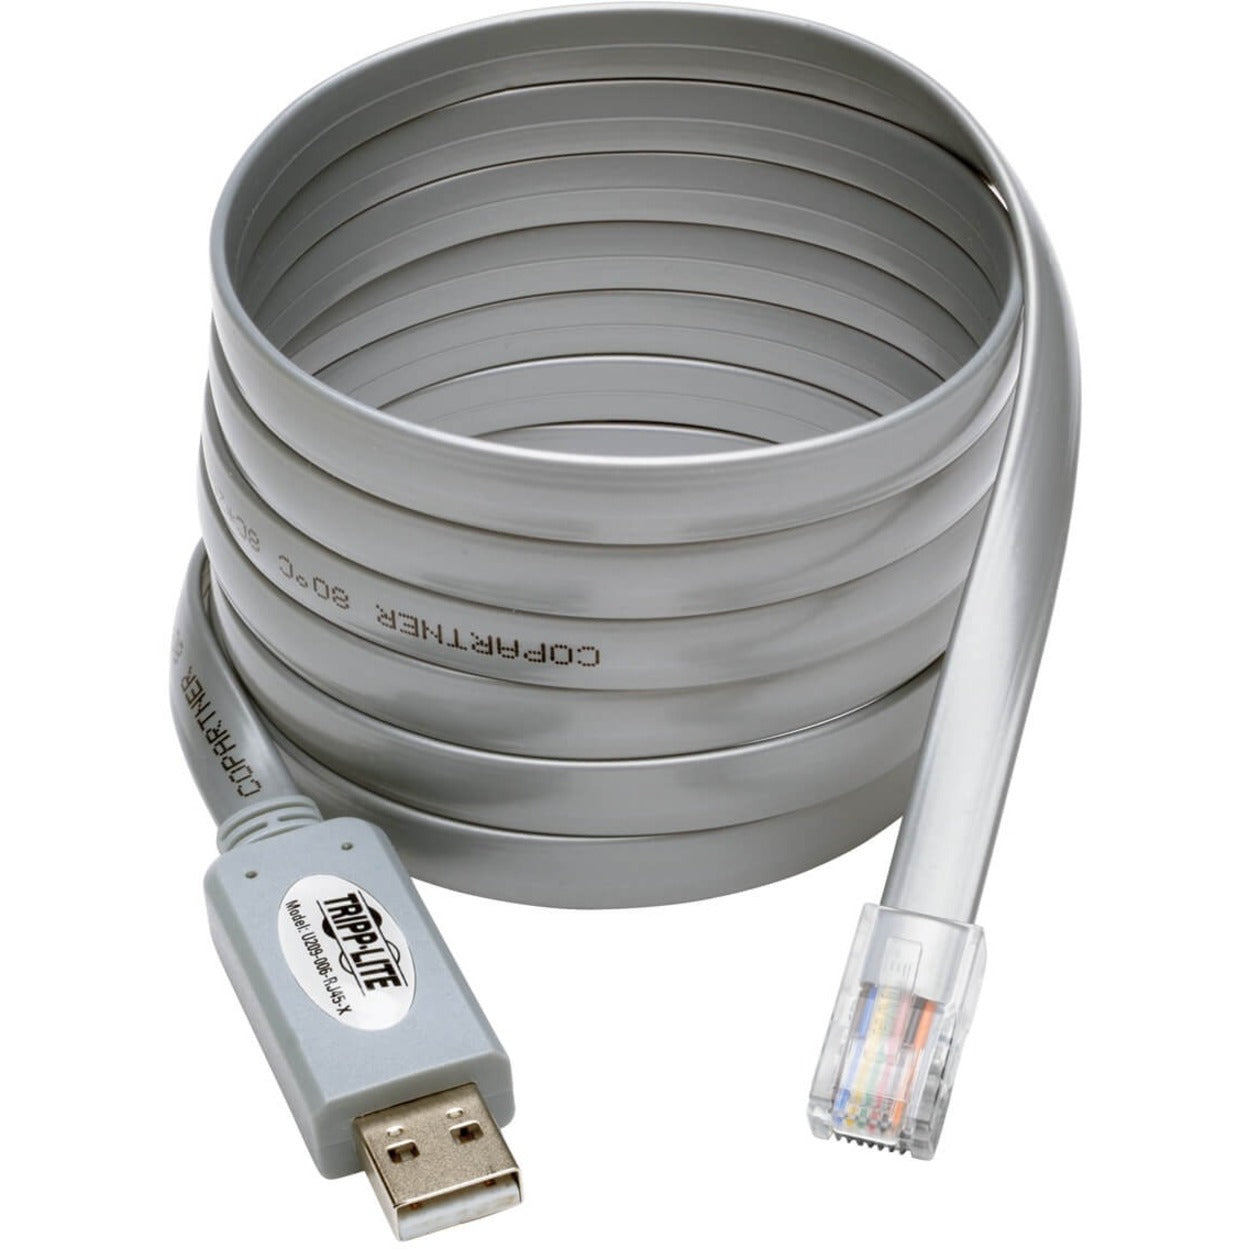 Tripp Lite U209-006-RJ45-X USB auf RJ45 Cisco Serielles Rollover-Kabel USB Typ-A auf RJ45 M/M 6 ft. Crosstalk-Schutz EMI/RF-Schutz